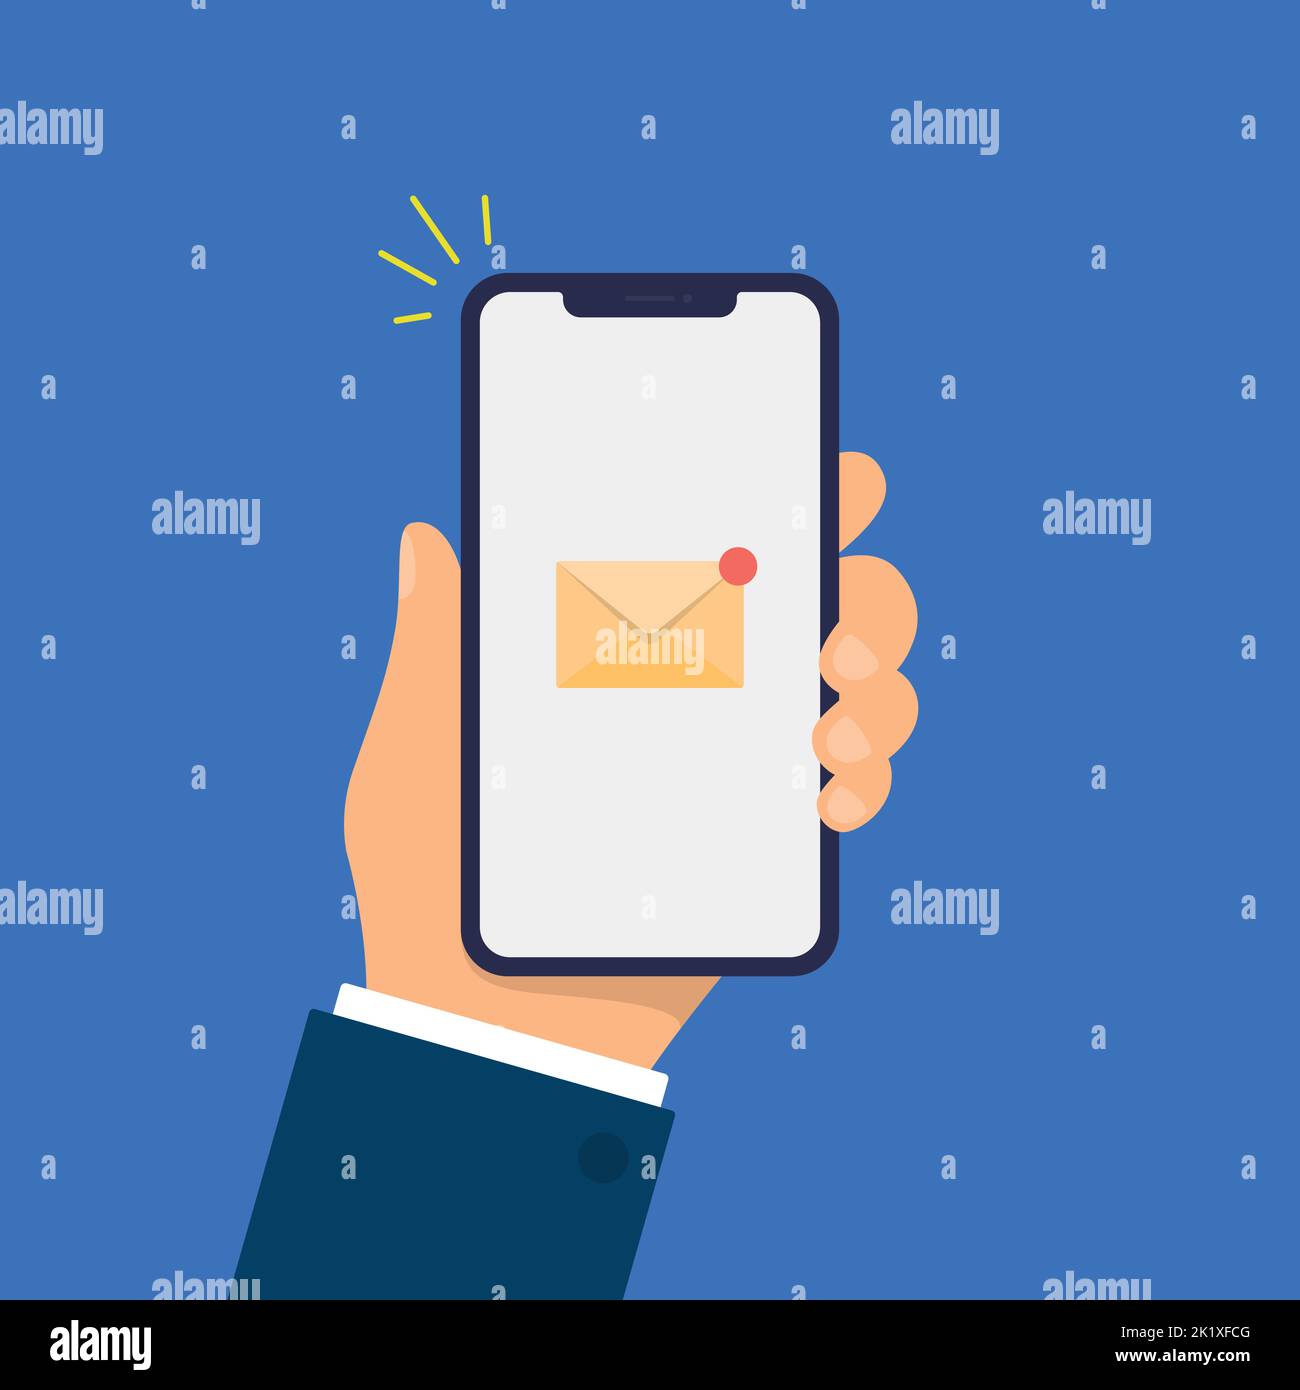 Neue E-Mail-Benachrichtigung auf dem Smartphone-Bildschirm. Die Hand hält das Smartphone. Moderne flache Design-Illustration. Stock Vektor